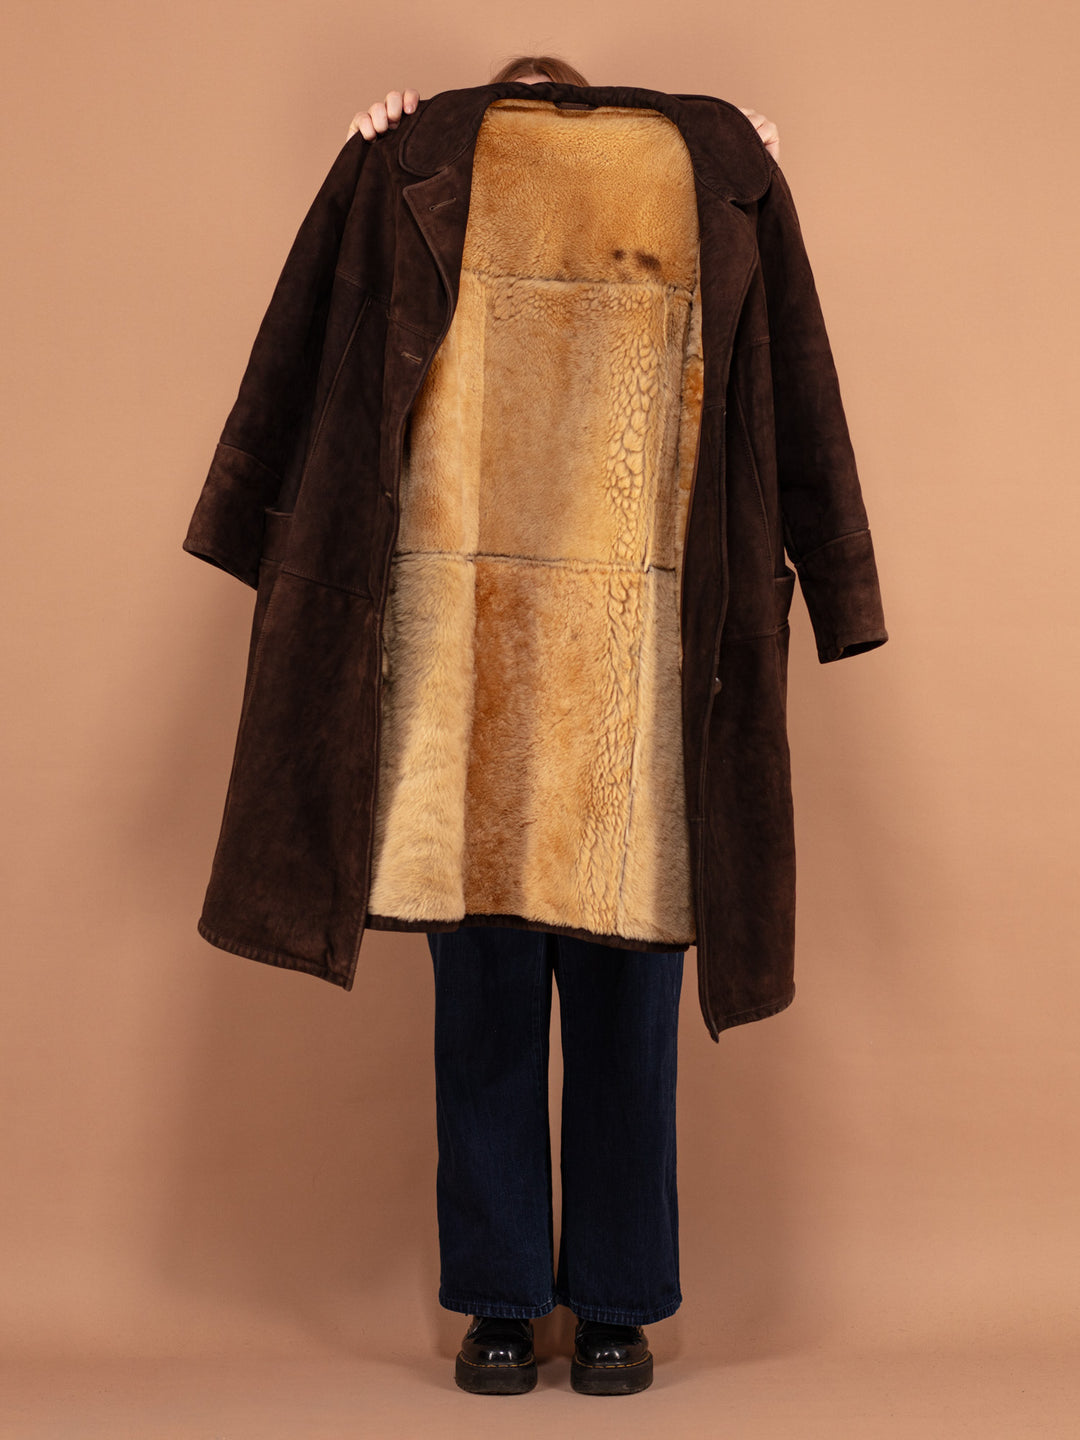 Oversized Sheepskin Coat 80s, Size XXL, Sheepskin Suede Coat, Western Style Sheepskin Overcoat, Vintage Outerwear, Sustainable Clothing